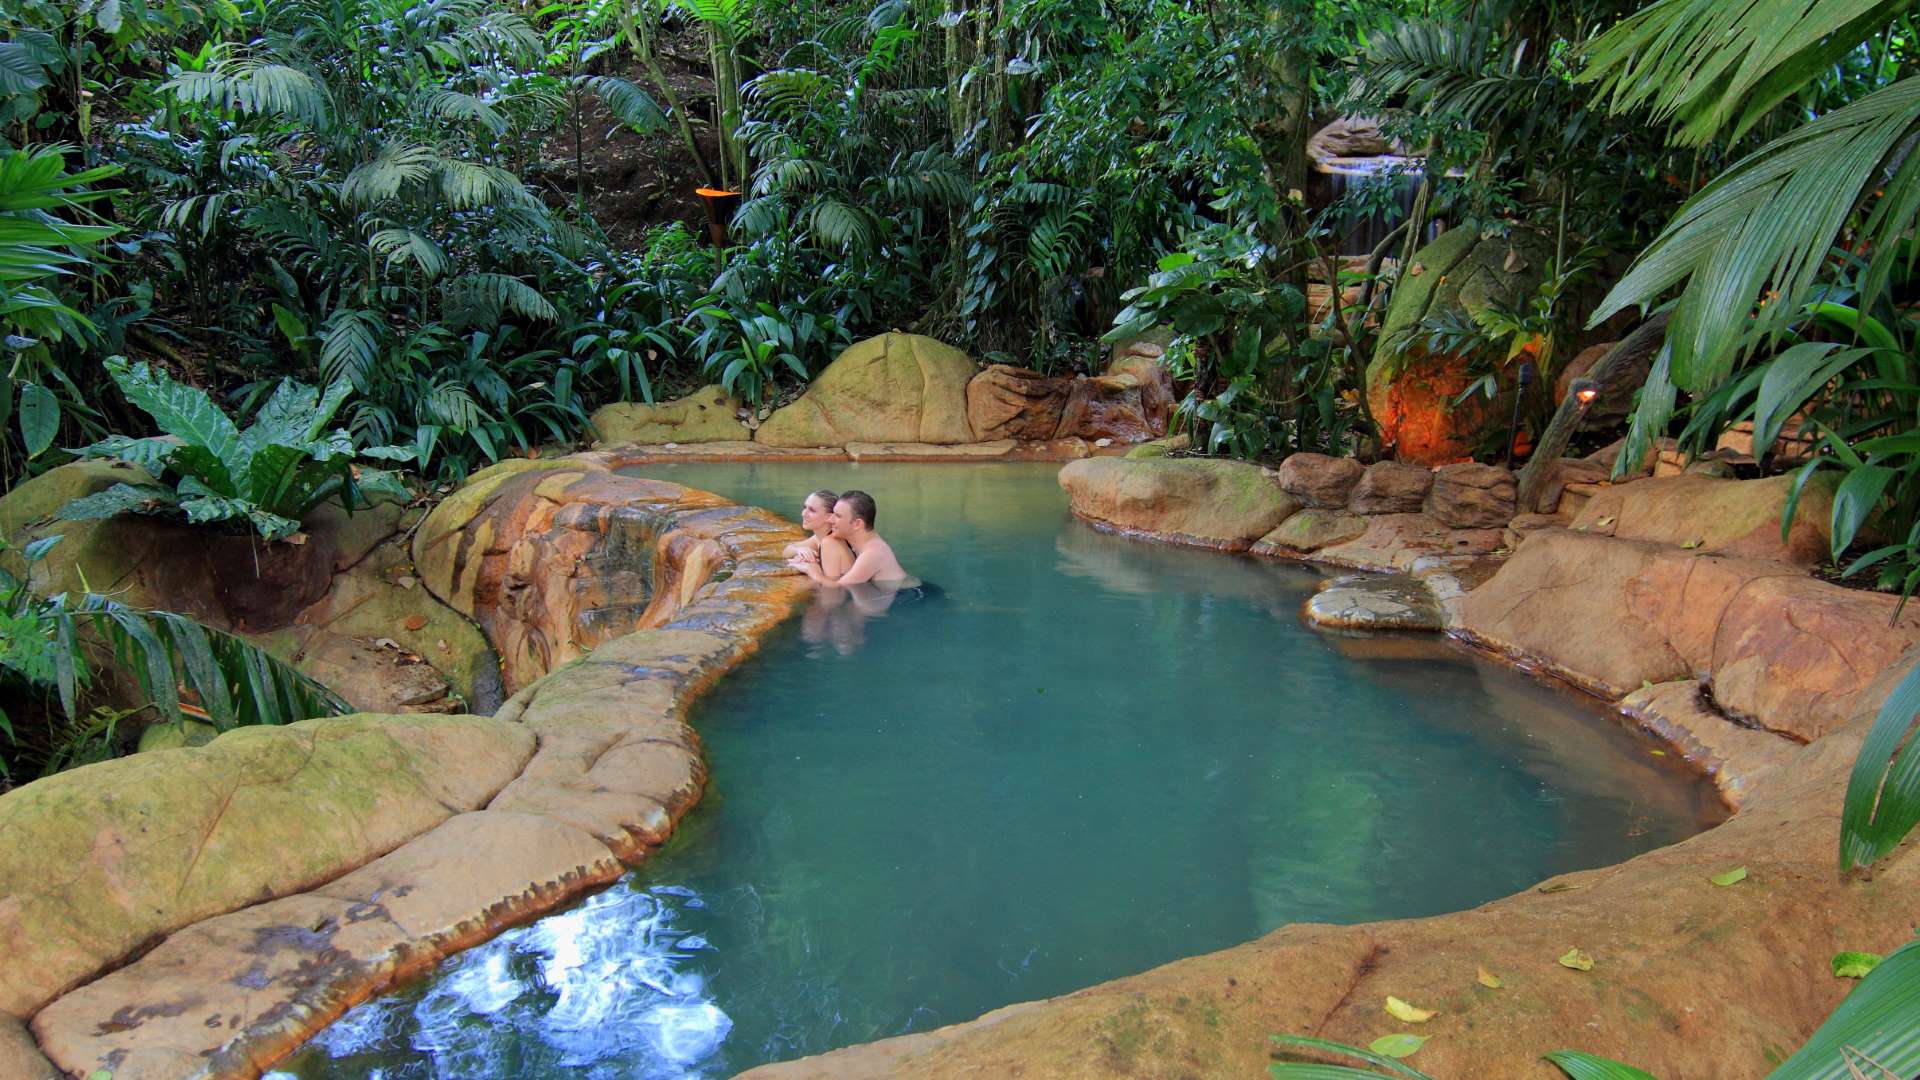 The Springs Resort Pool